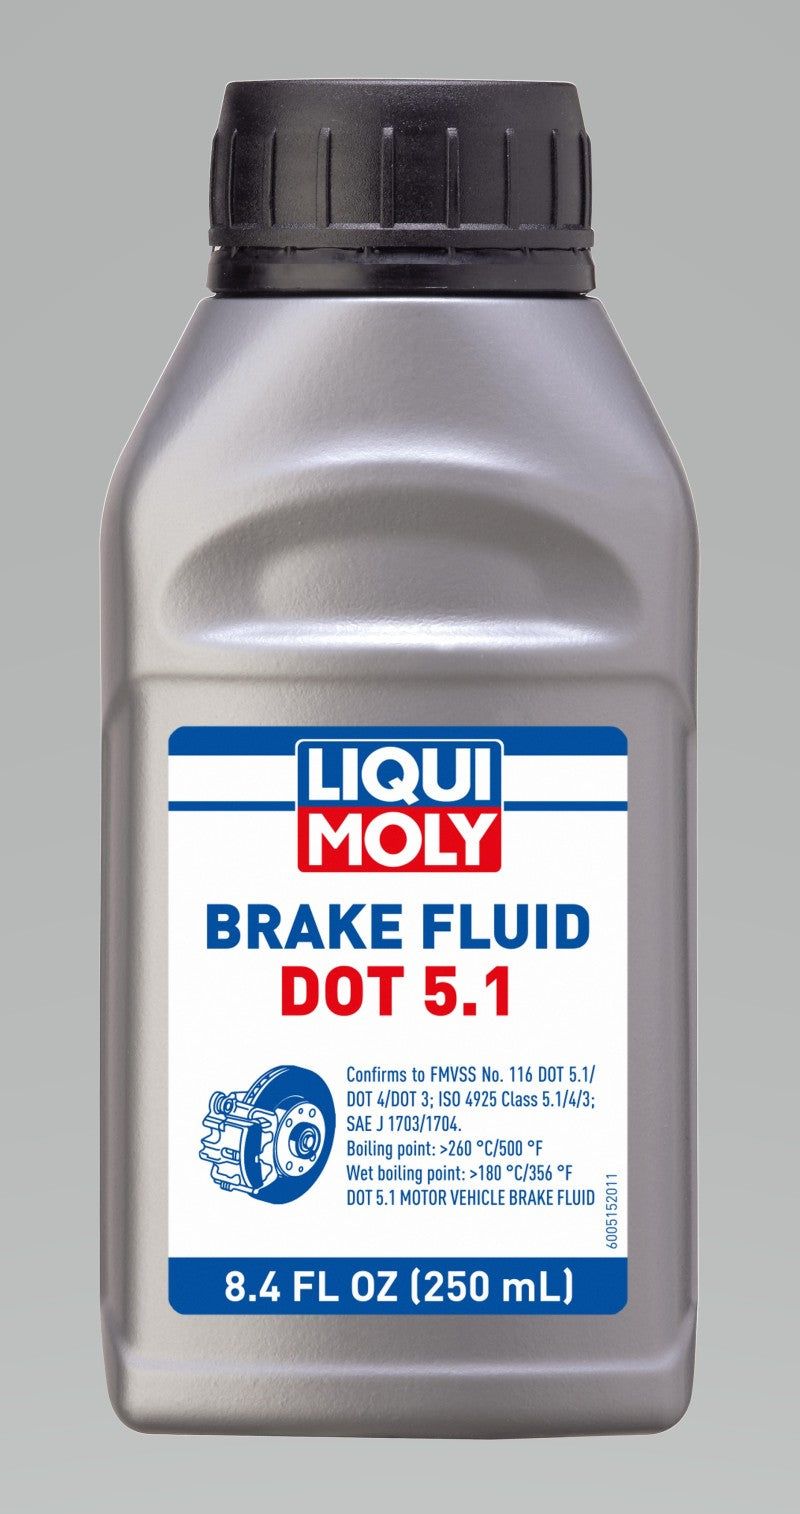 LIQUI MOLY 250mL Brake Fluid DOT 5.1 - Single